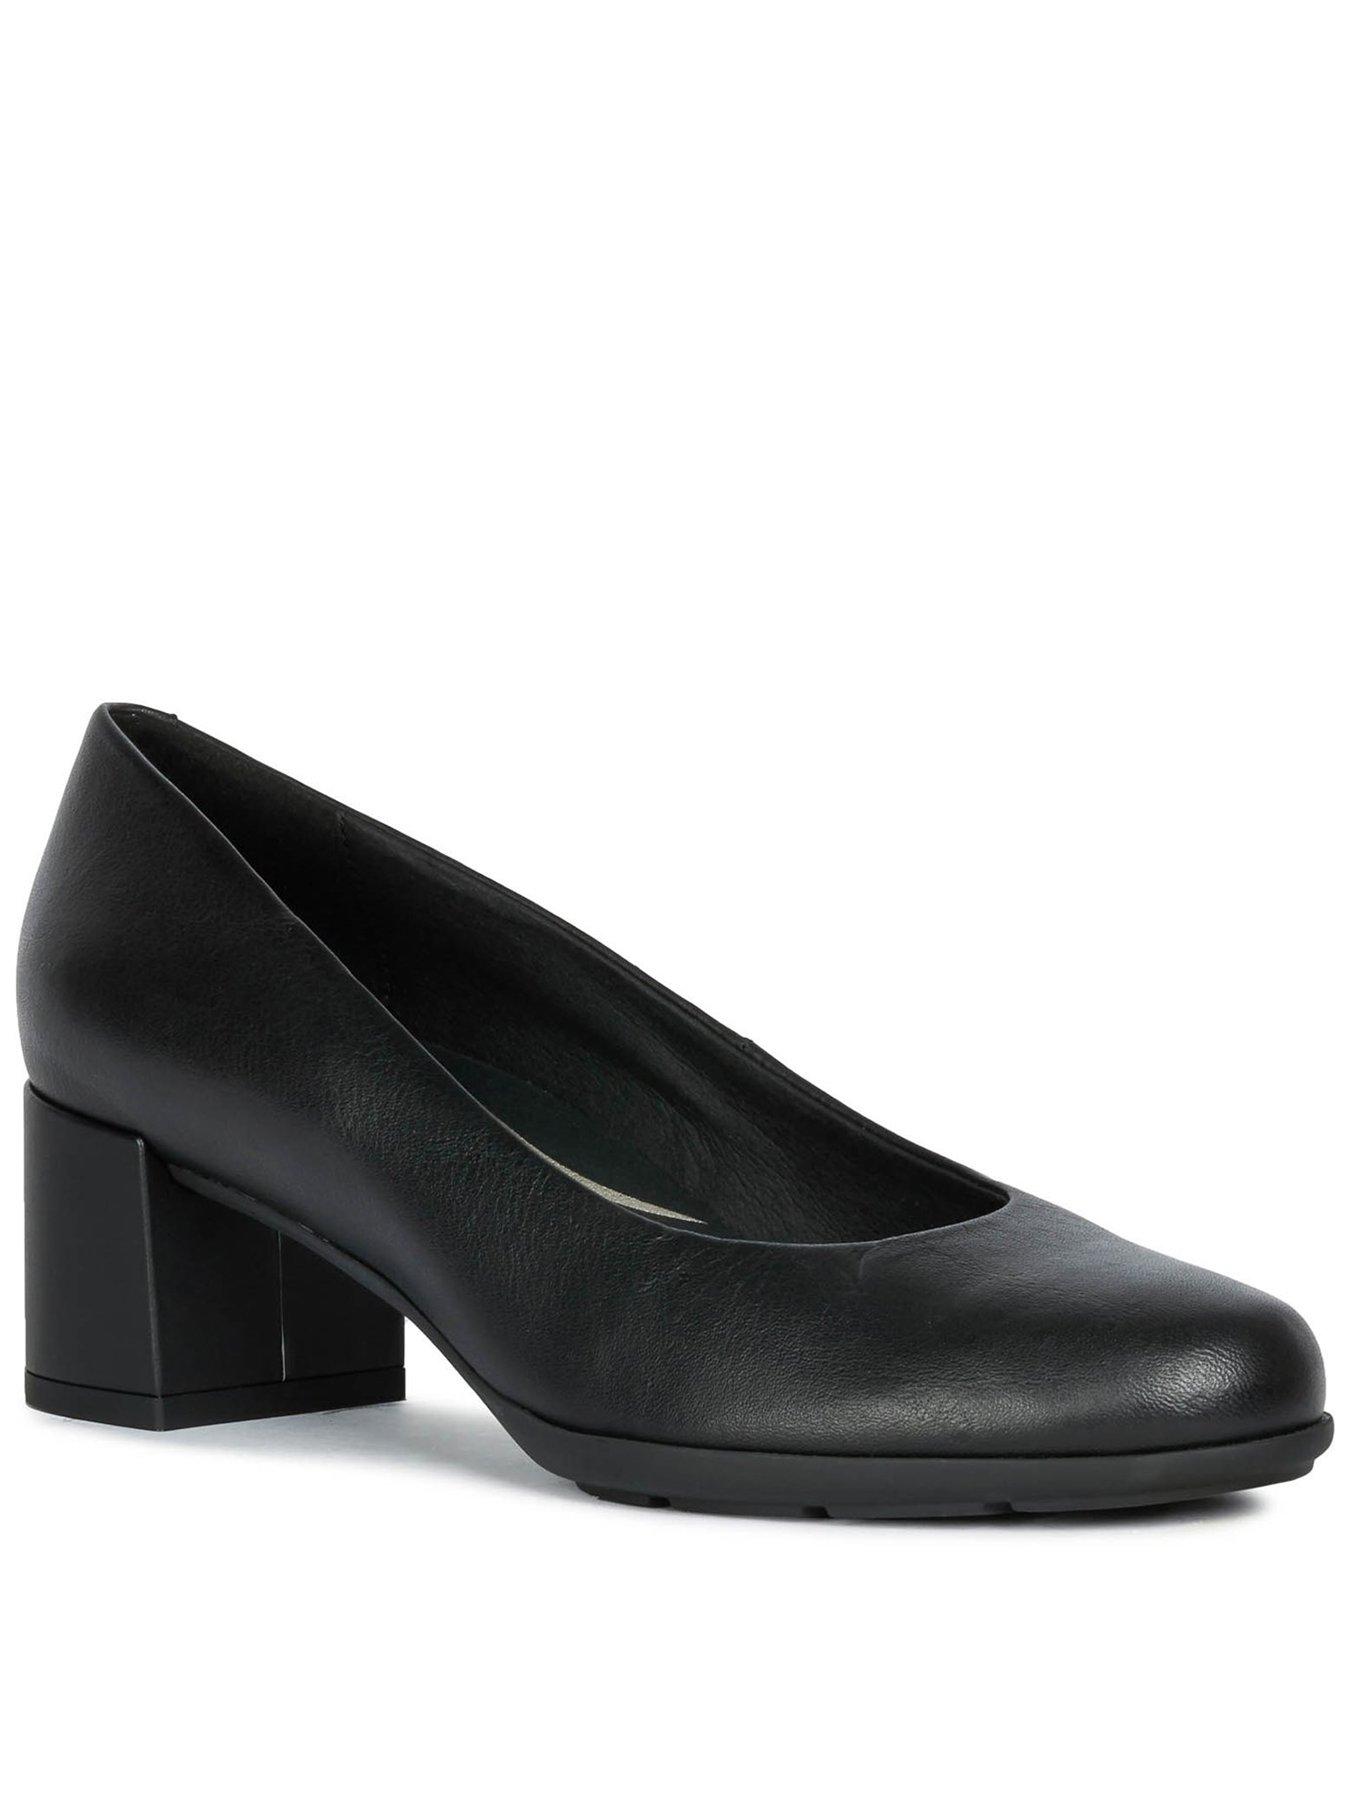 black leather court shoes uk